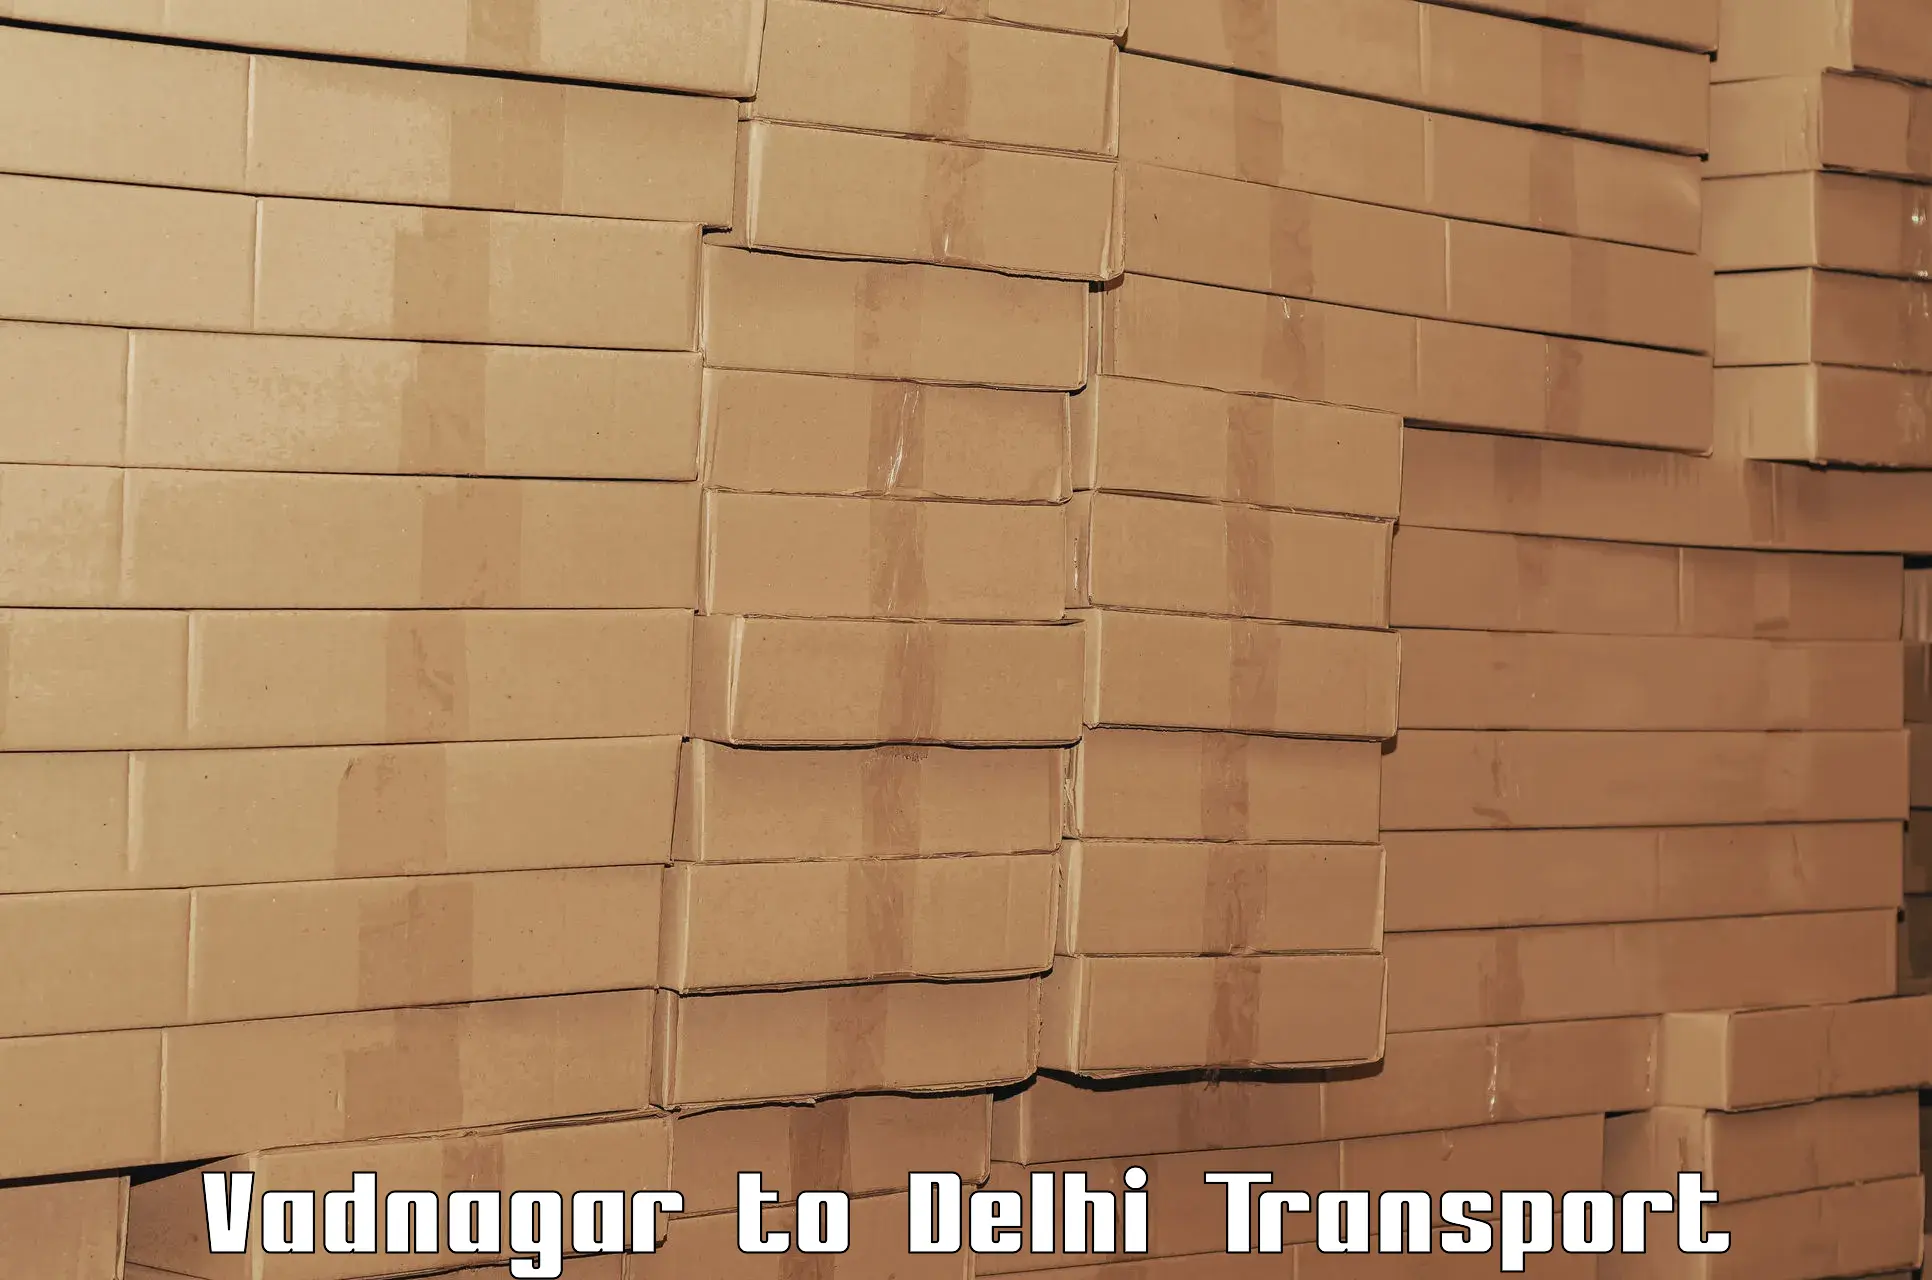 Truck transport companies in India Vadnagar to Ashok Vihar